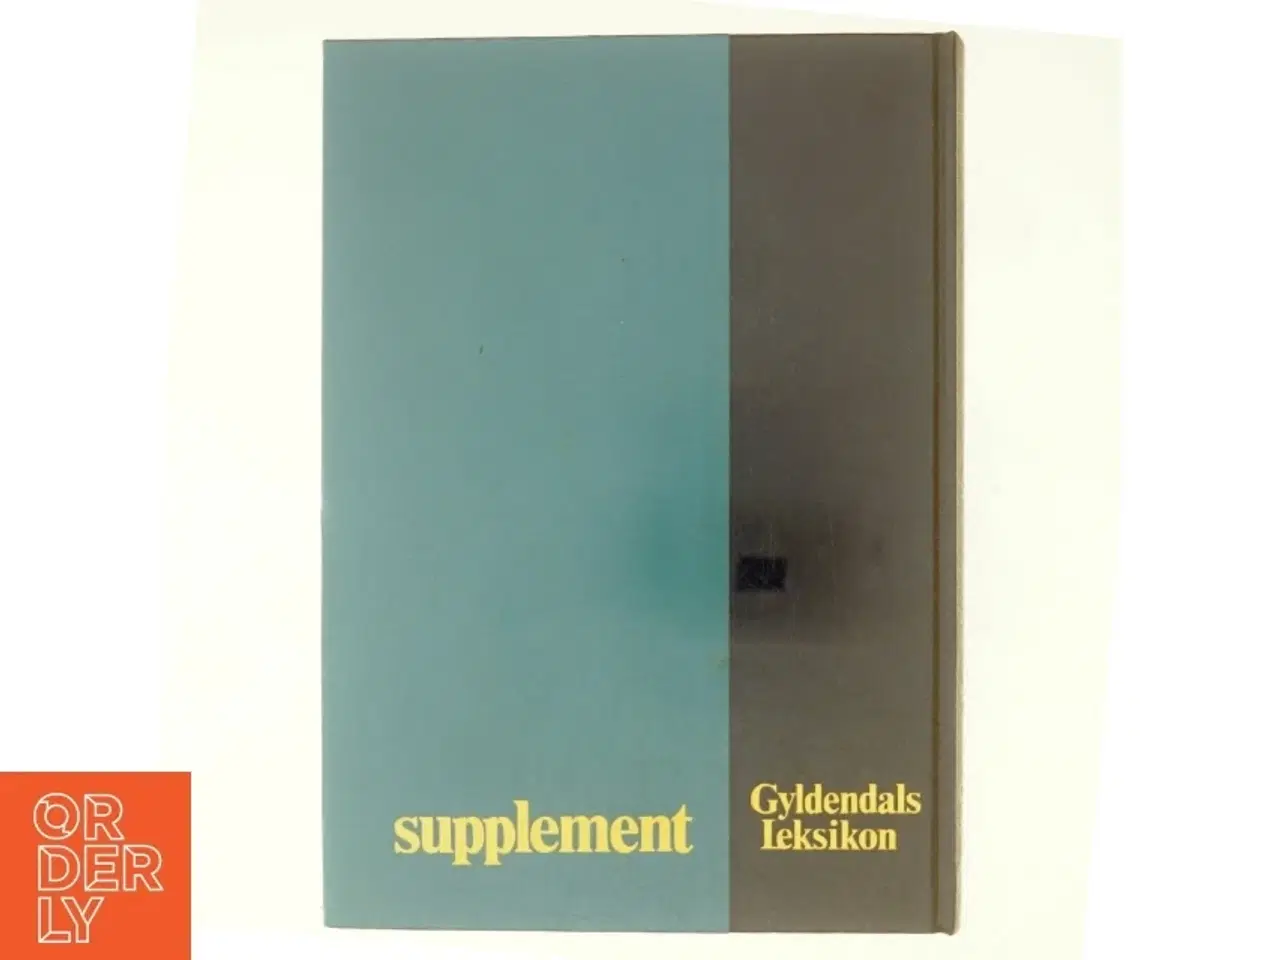 Billede 3 - Gyldendals leksikon, supplement